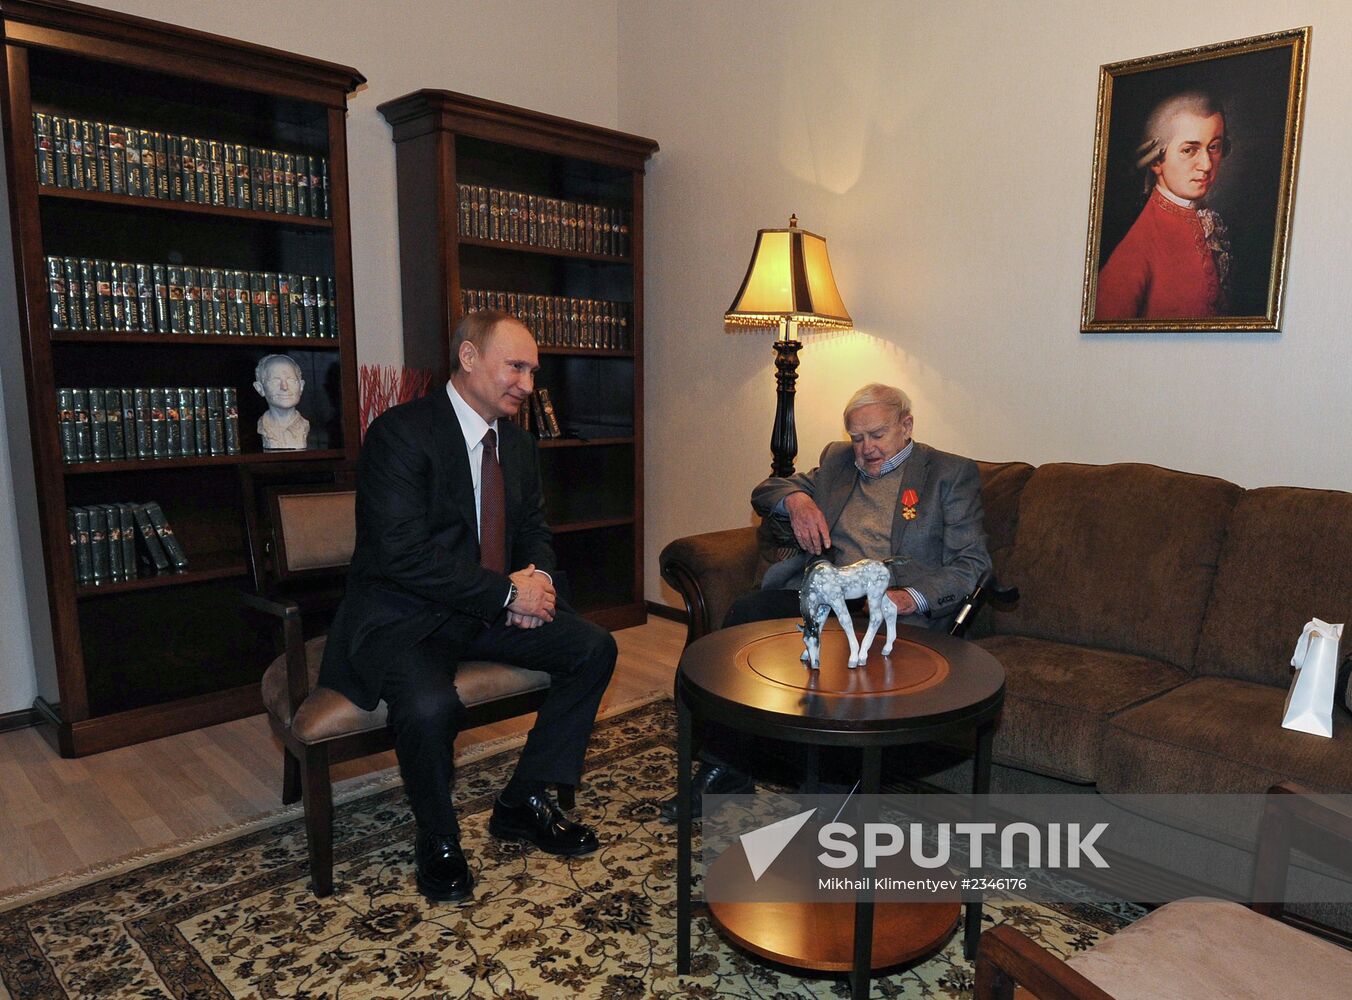 Vladimir Putin's working visit to St. Petersburg